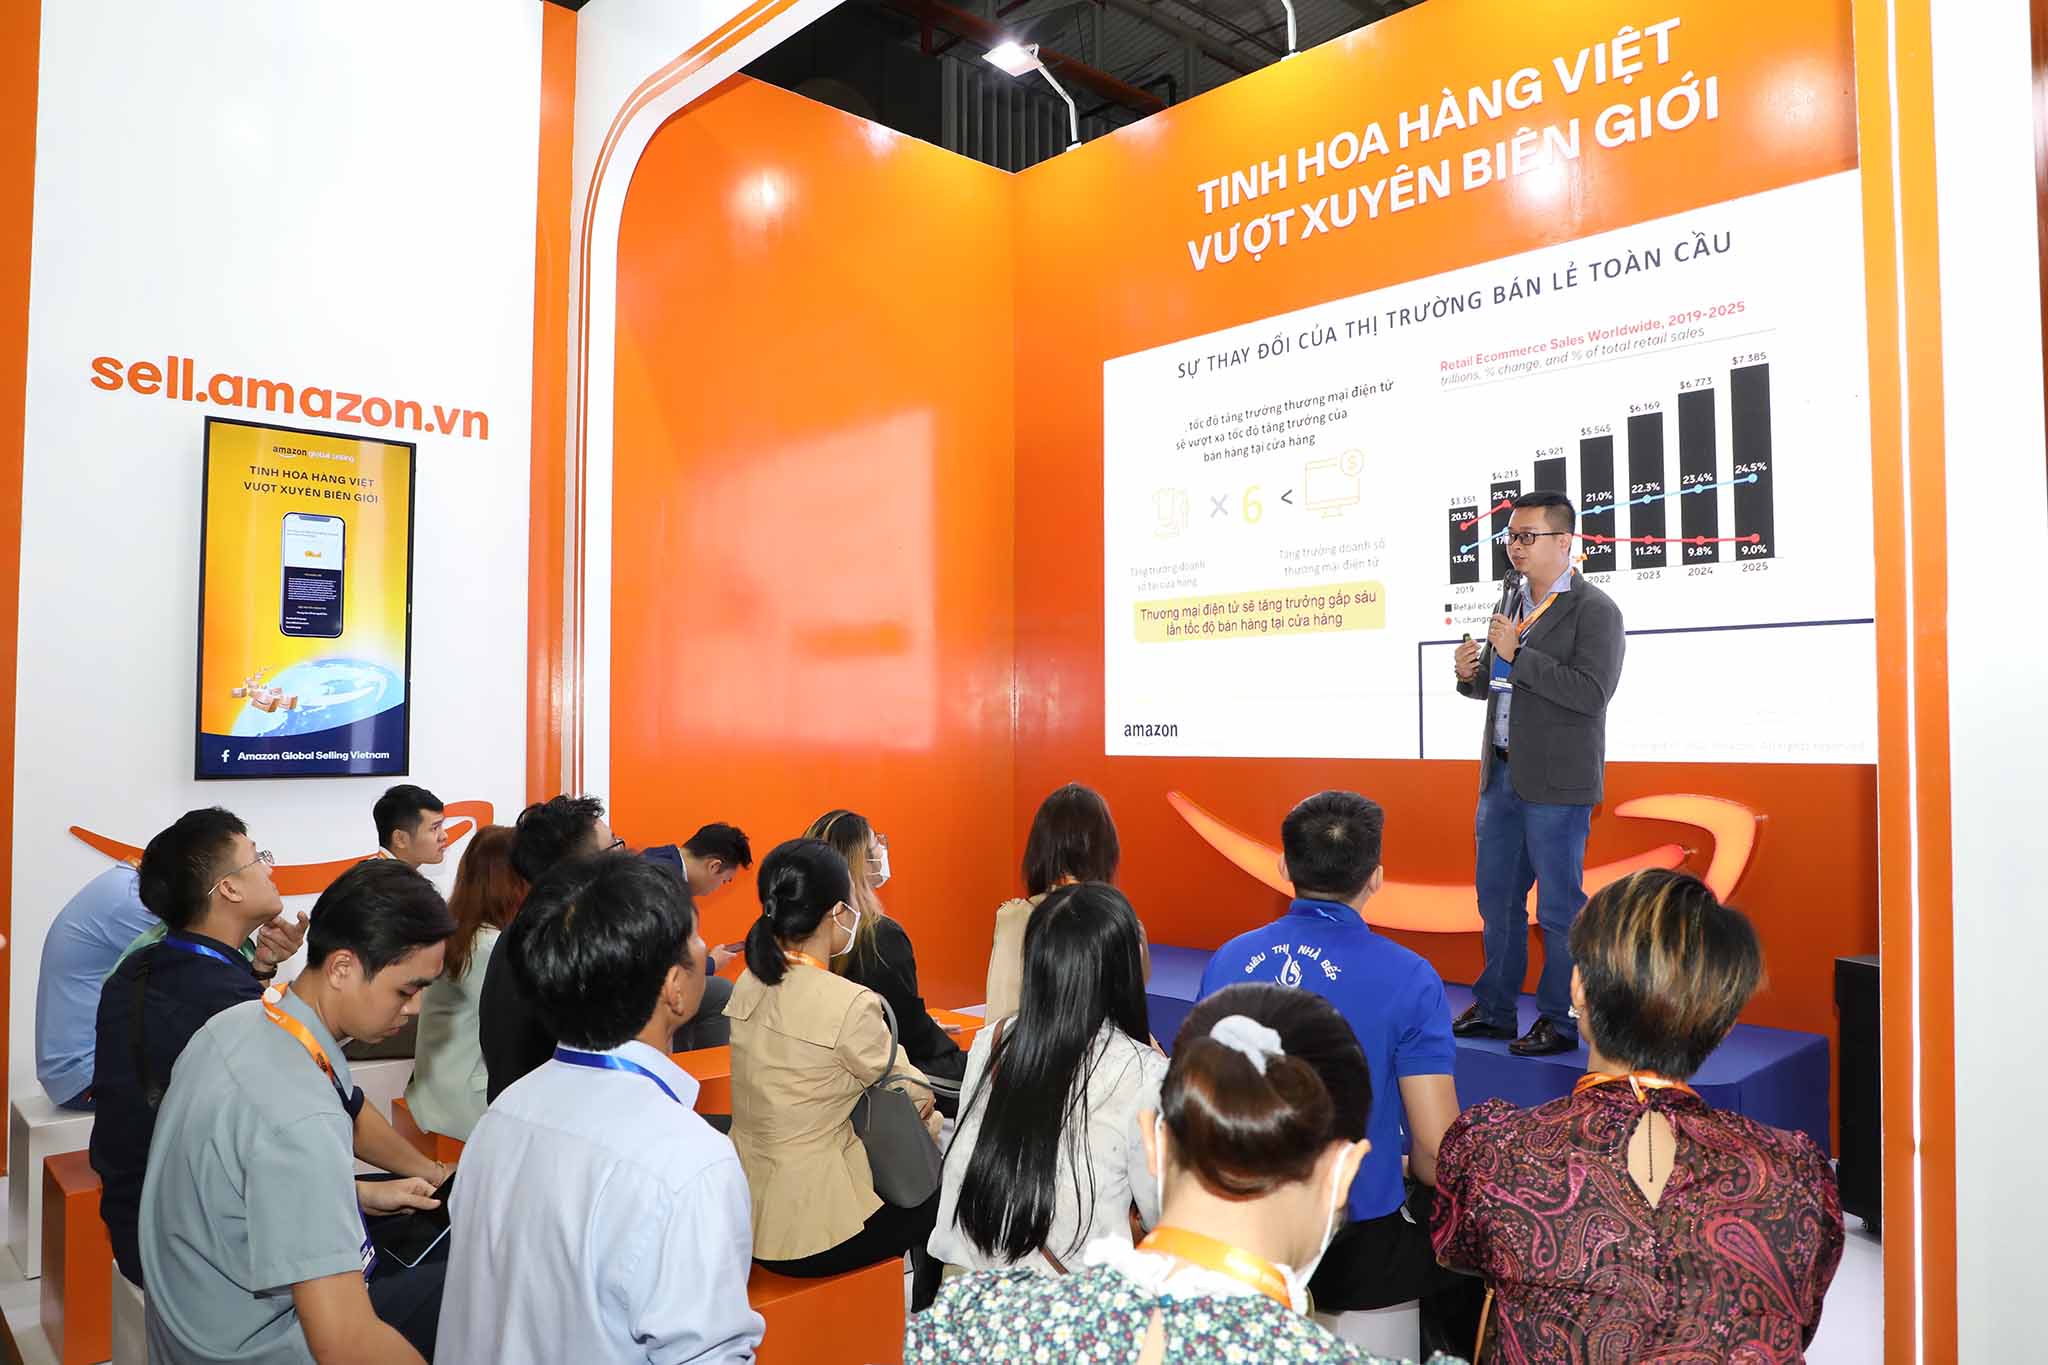 Amazon tham gia VIETNAM EXPO 2022 tại TP.Hồ Chí Minh, tiếp tục cam kết hỗ trợ các doanh nghiệp vừa và nhỏ Việt Nam trên hành trình xuất khẩu toàn cầu